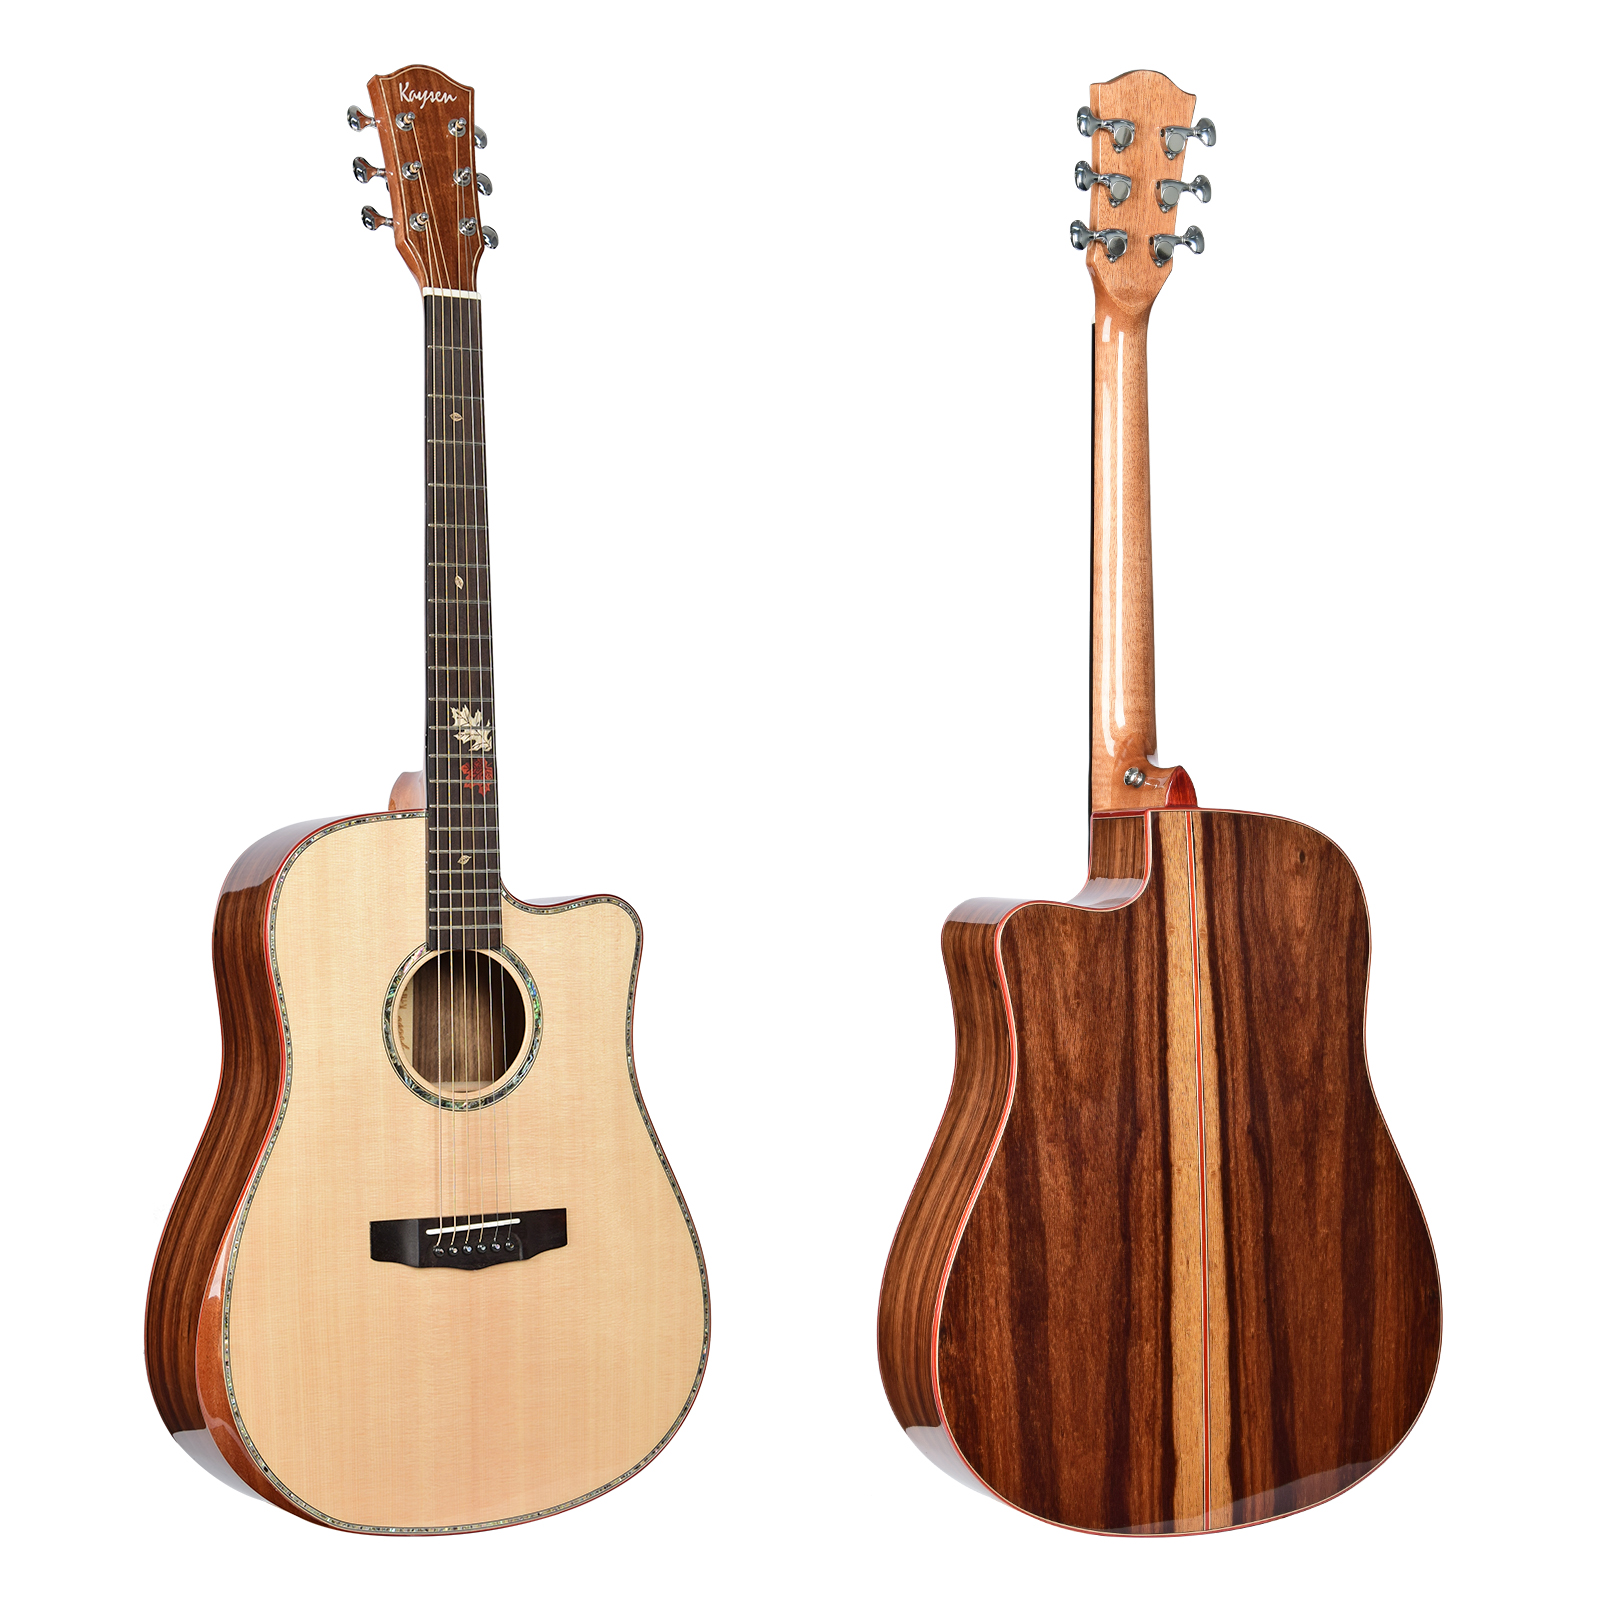 גיטרה אקוסטית מוגברת DC K-H1-41 Electric Acoustic guitar solid wood top